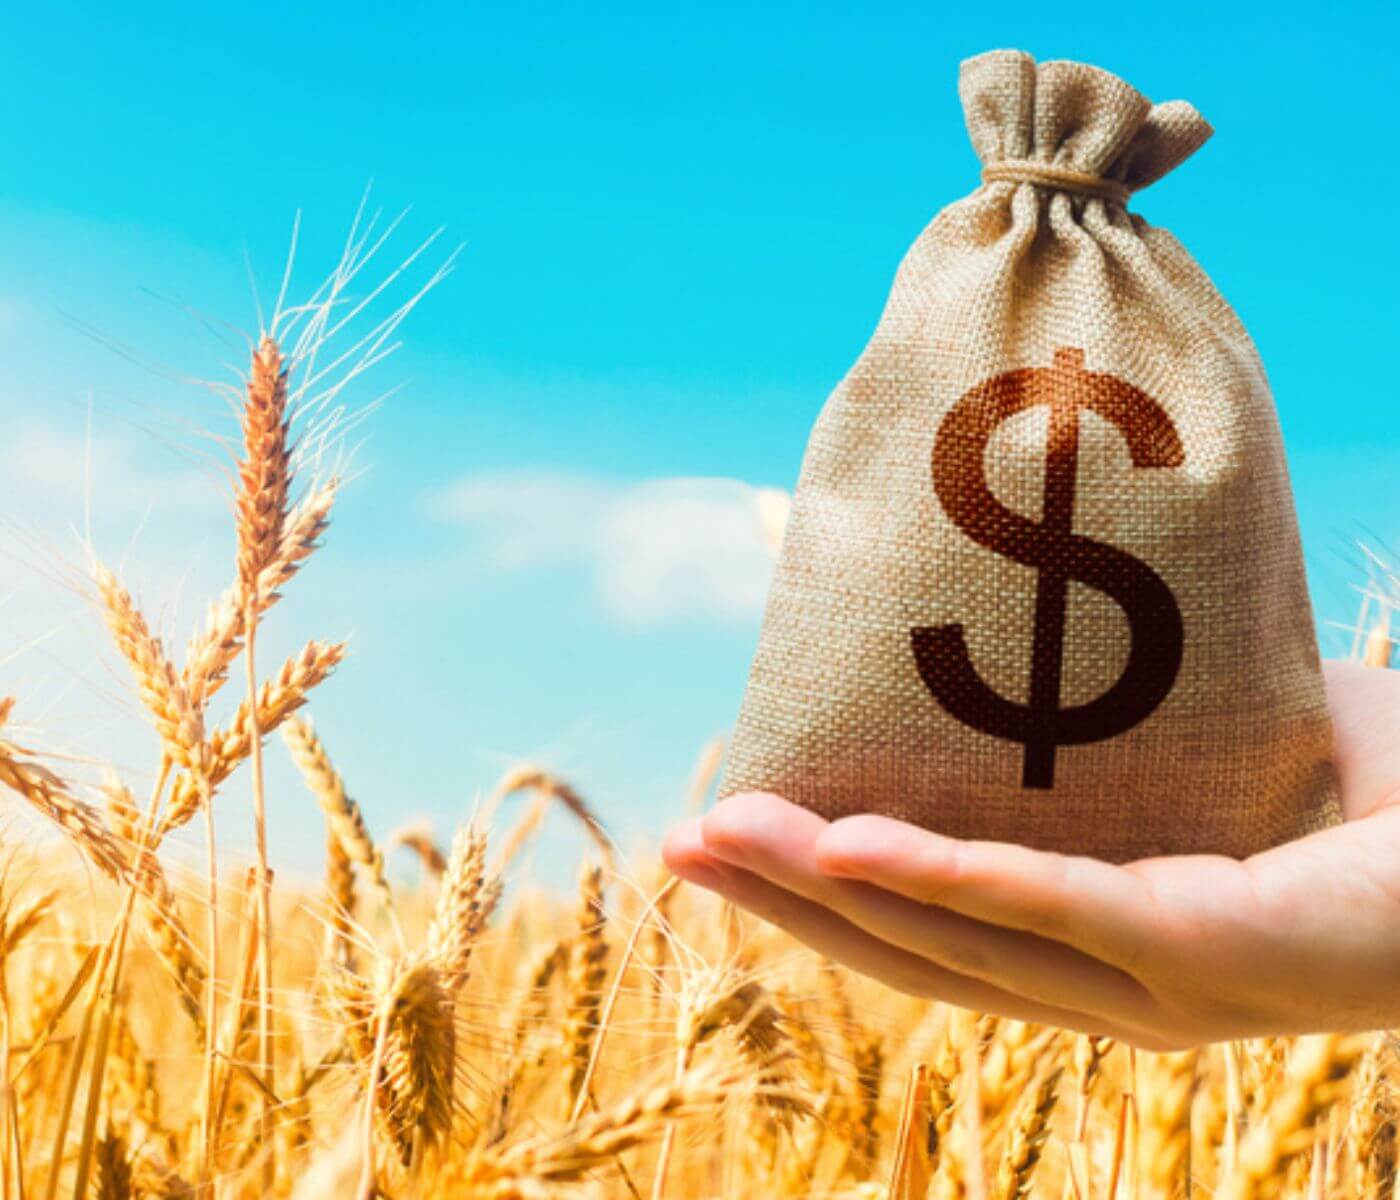 مع إندفاع الأسعار، تشاهد المشتريات الآجلة من القمح إنخفاضاً على مستوى العالم